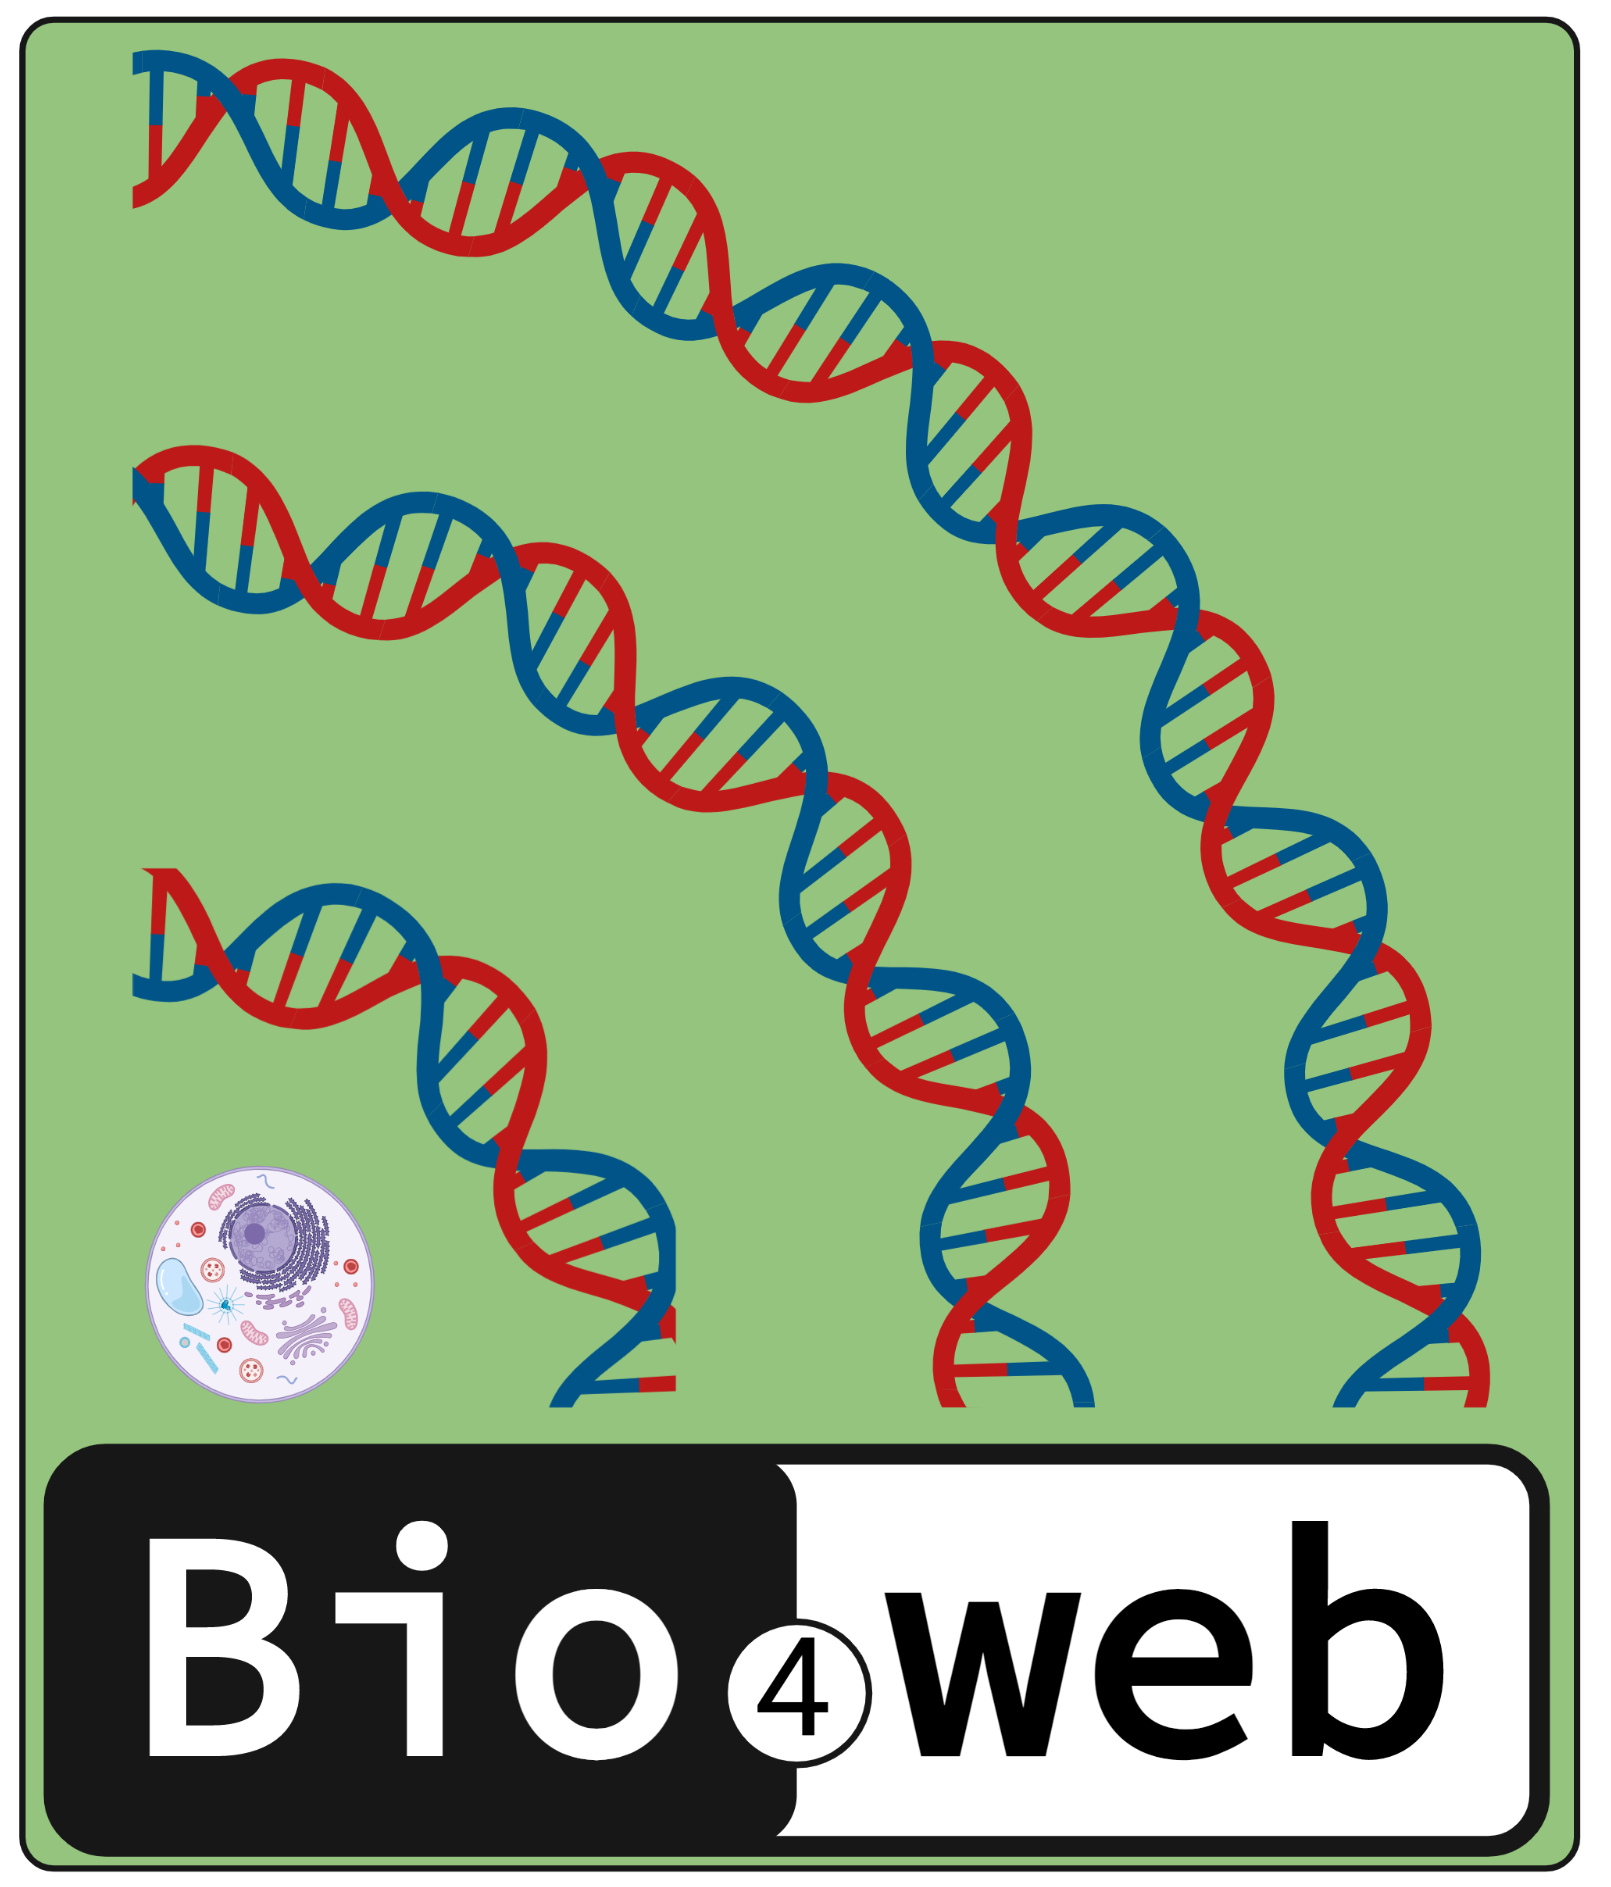 Bio4web access